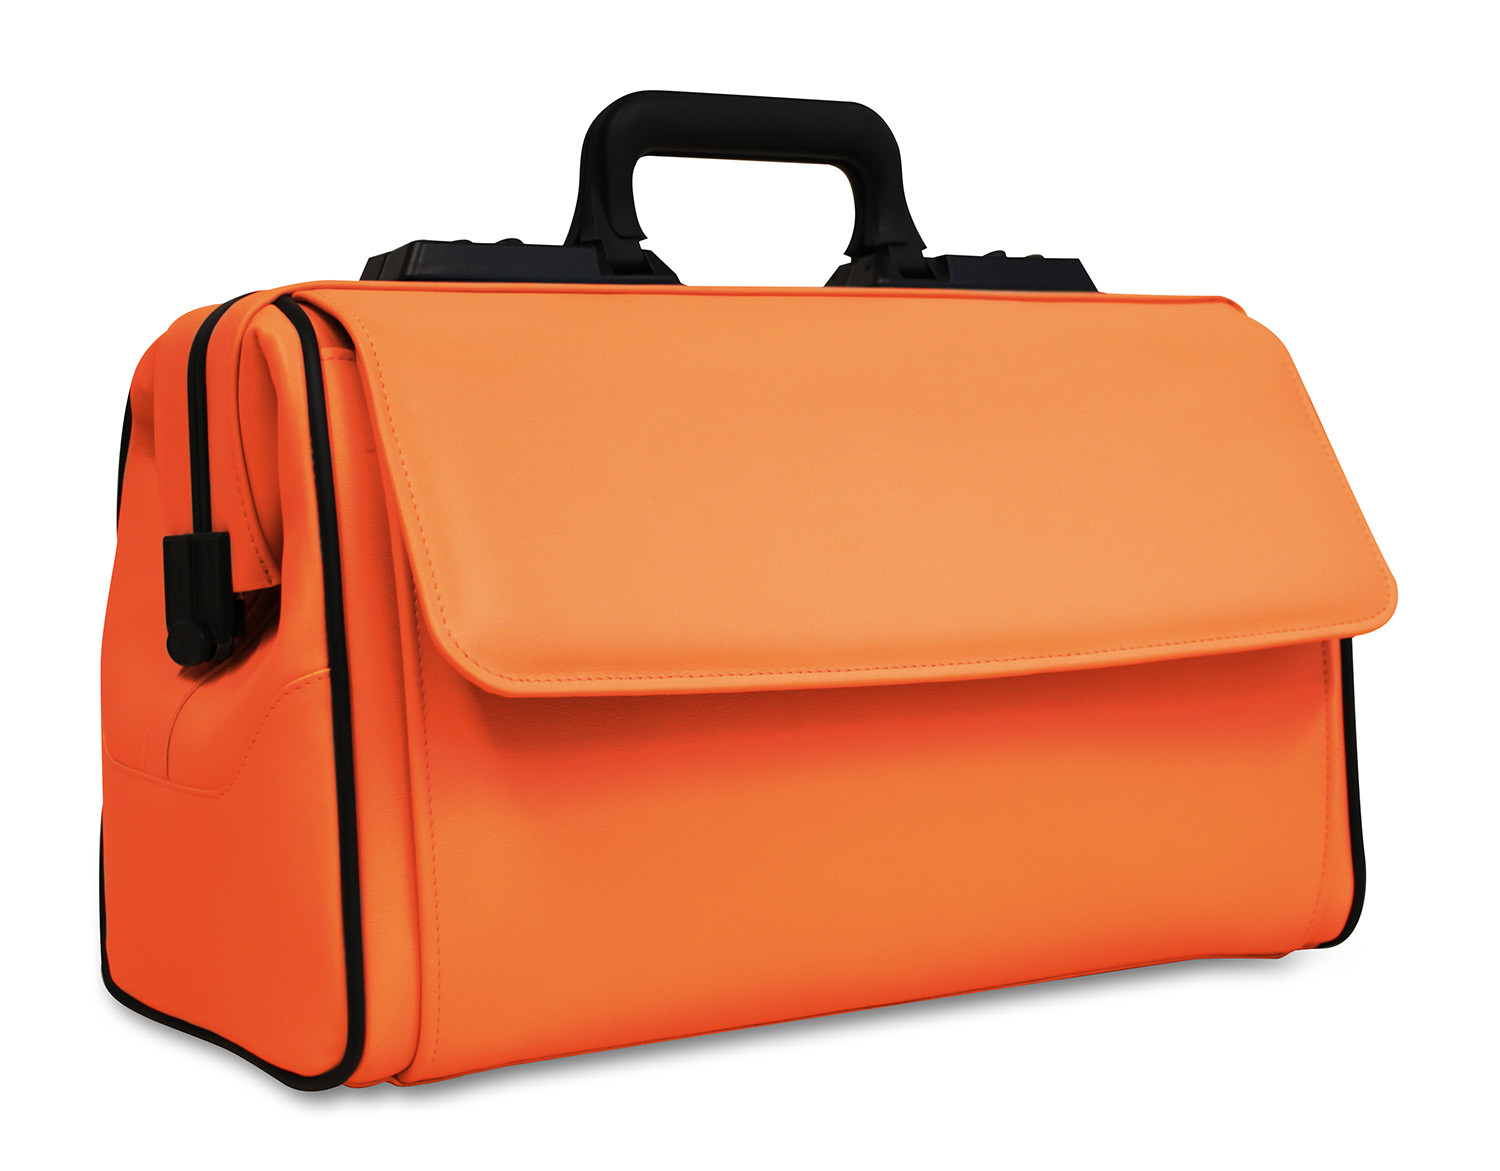 Produktansicht Rusticana Großformat in orange